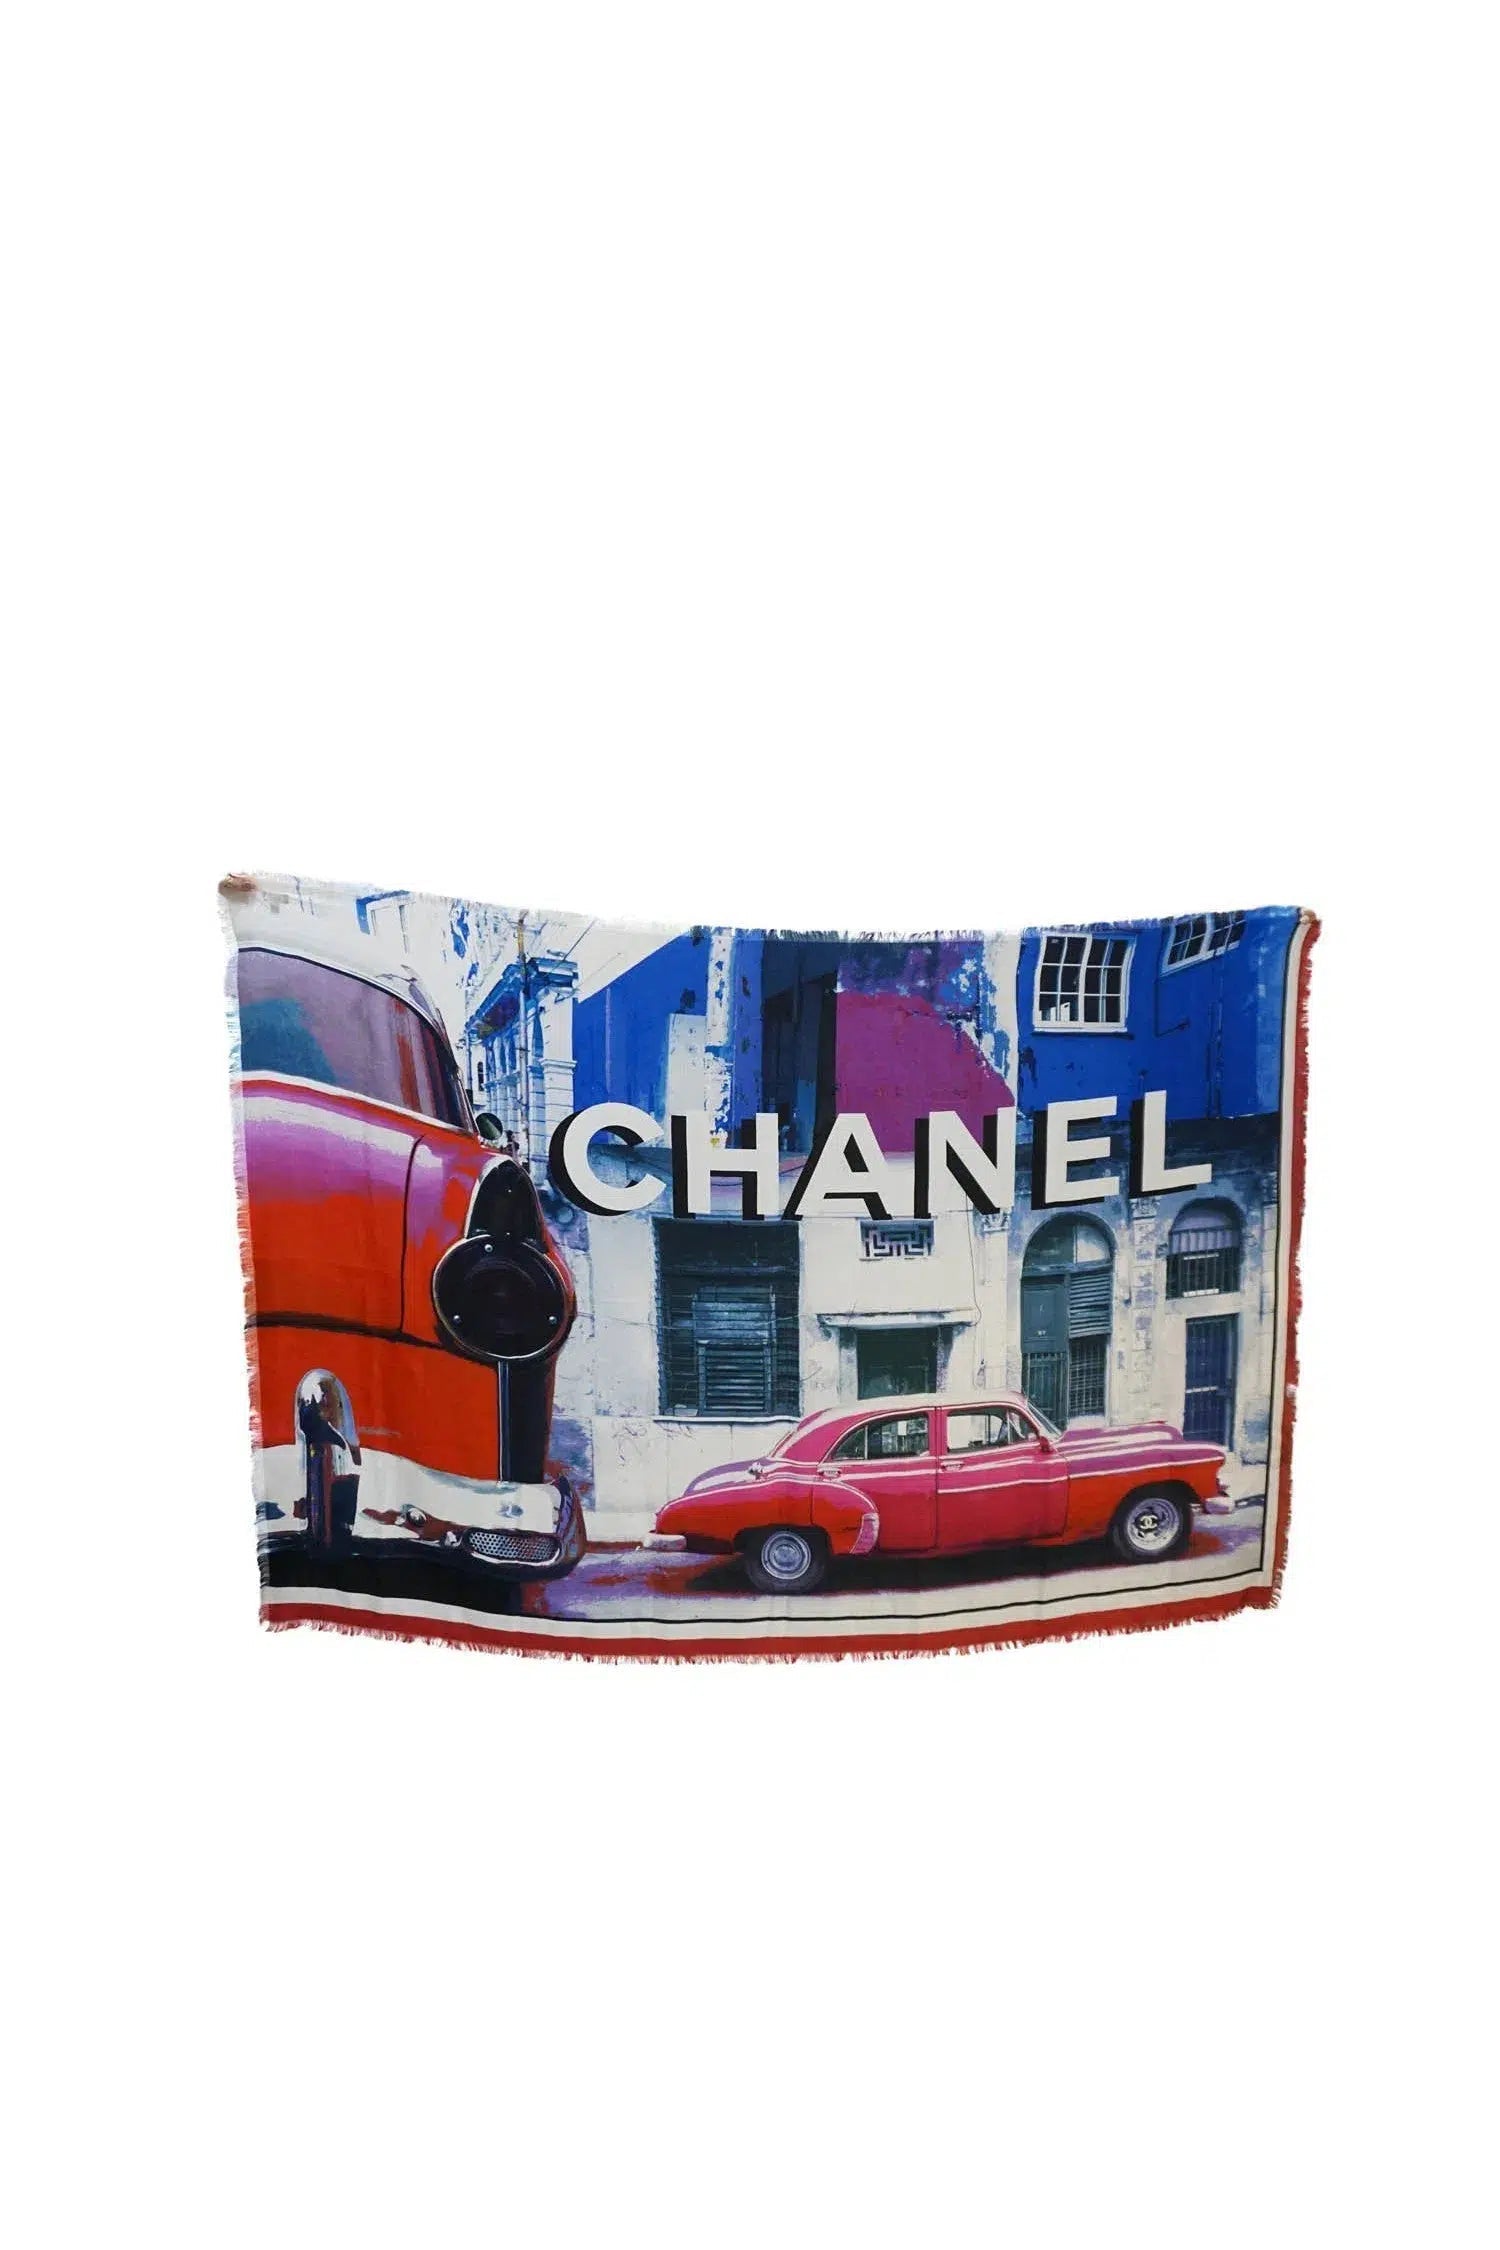 Chanel Cuba Car Print Silk Scarf NIB 2018C